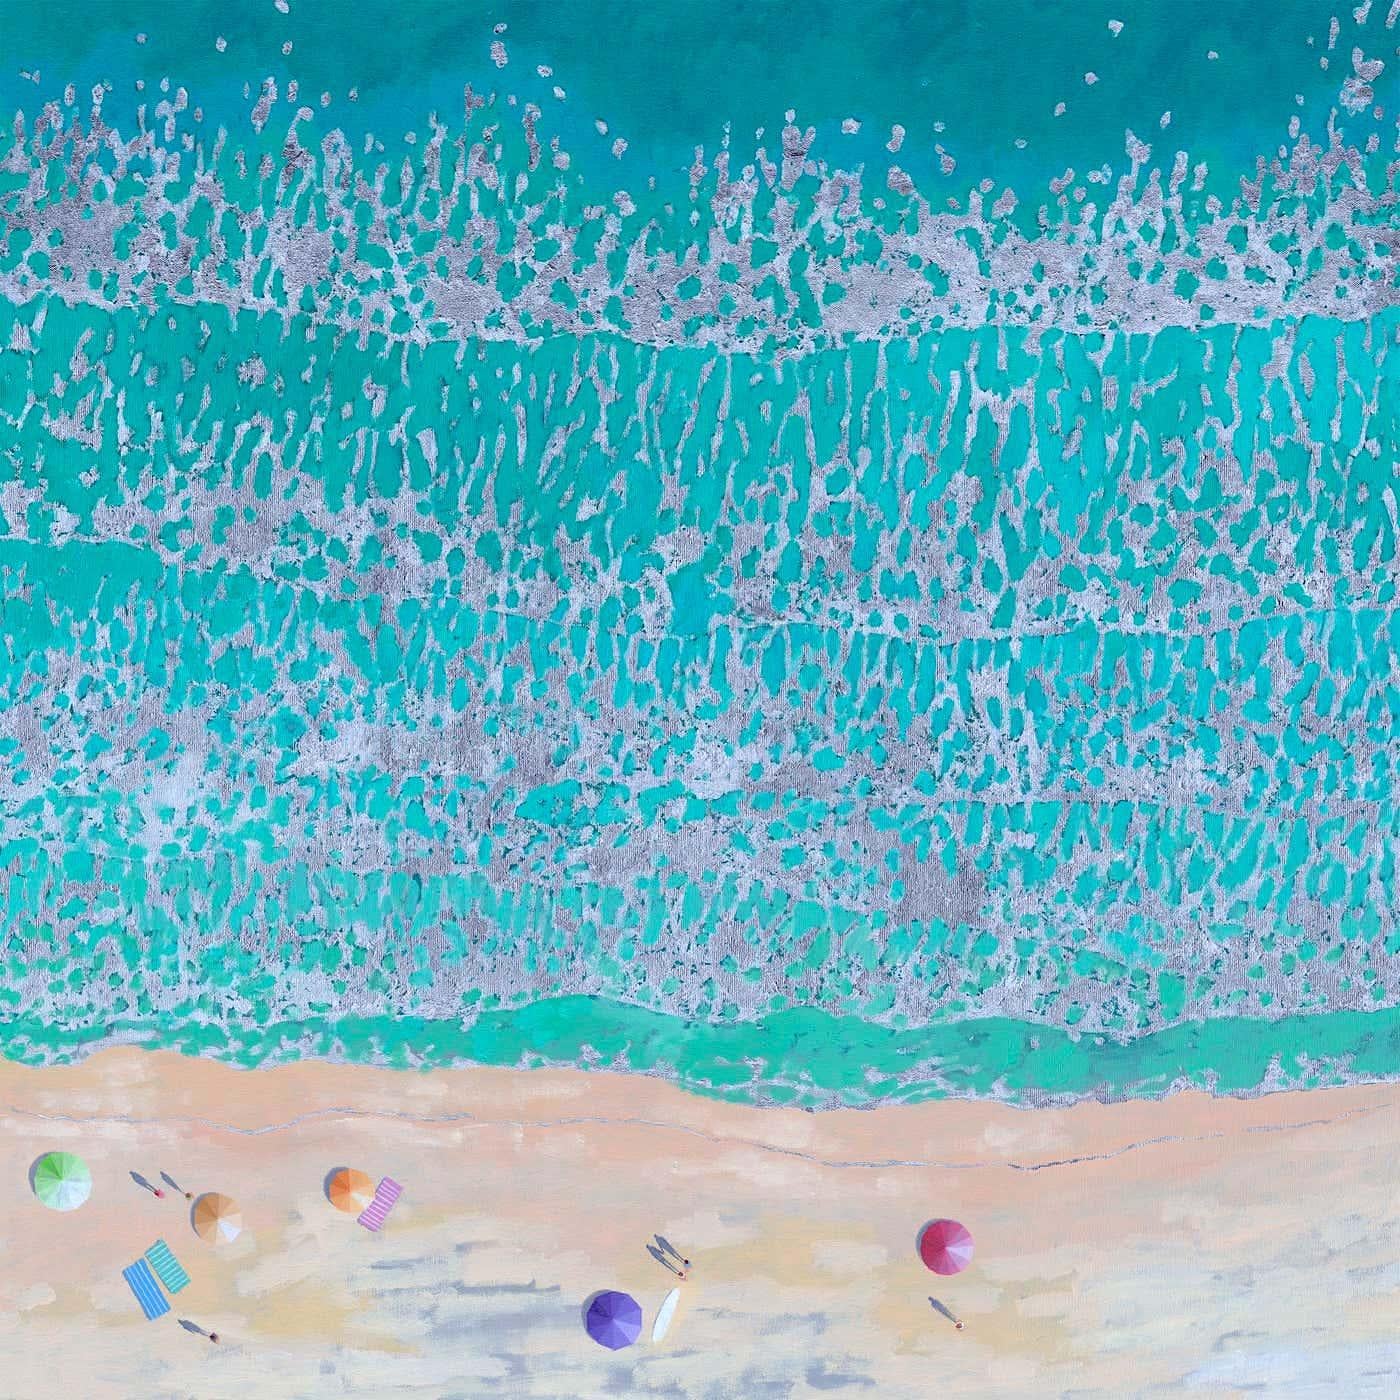 Pastel Umbrellas-original impressionism seascape oil painting-contemporary Art